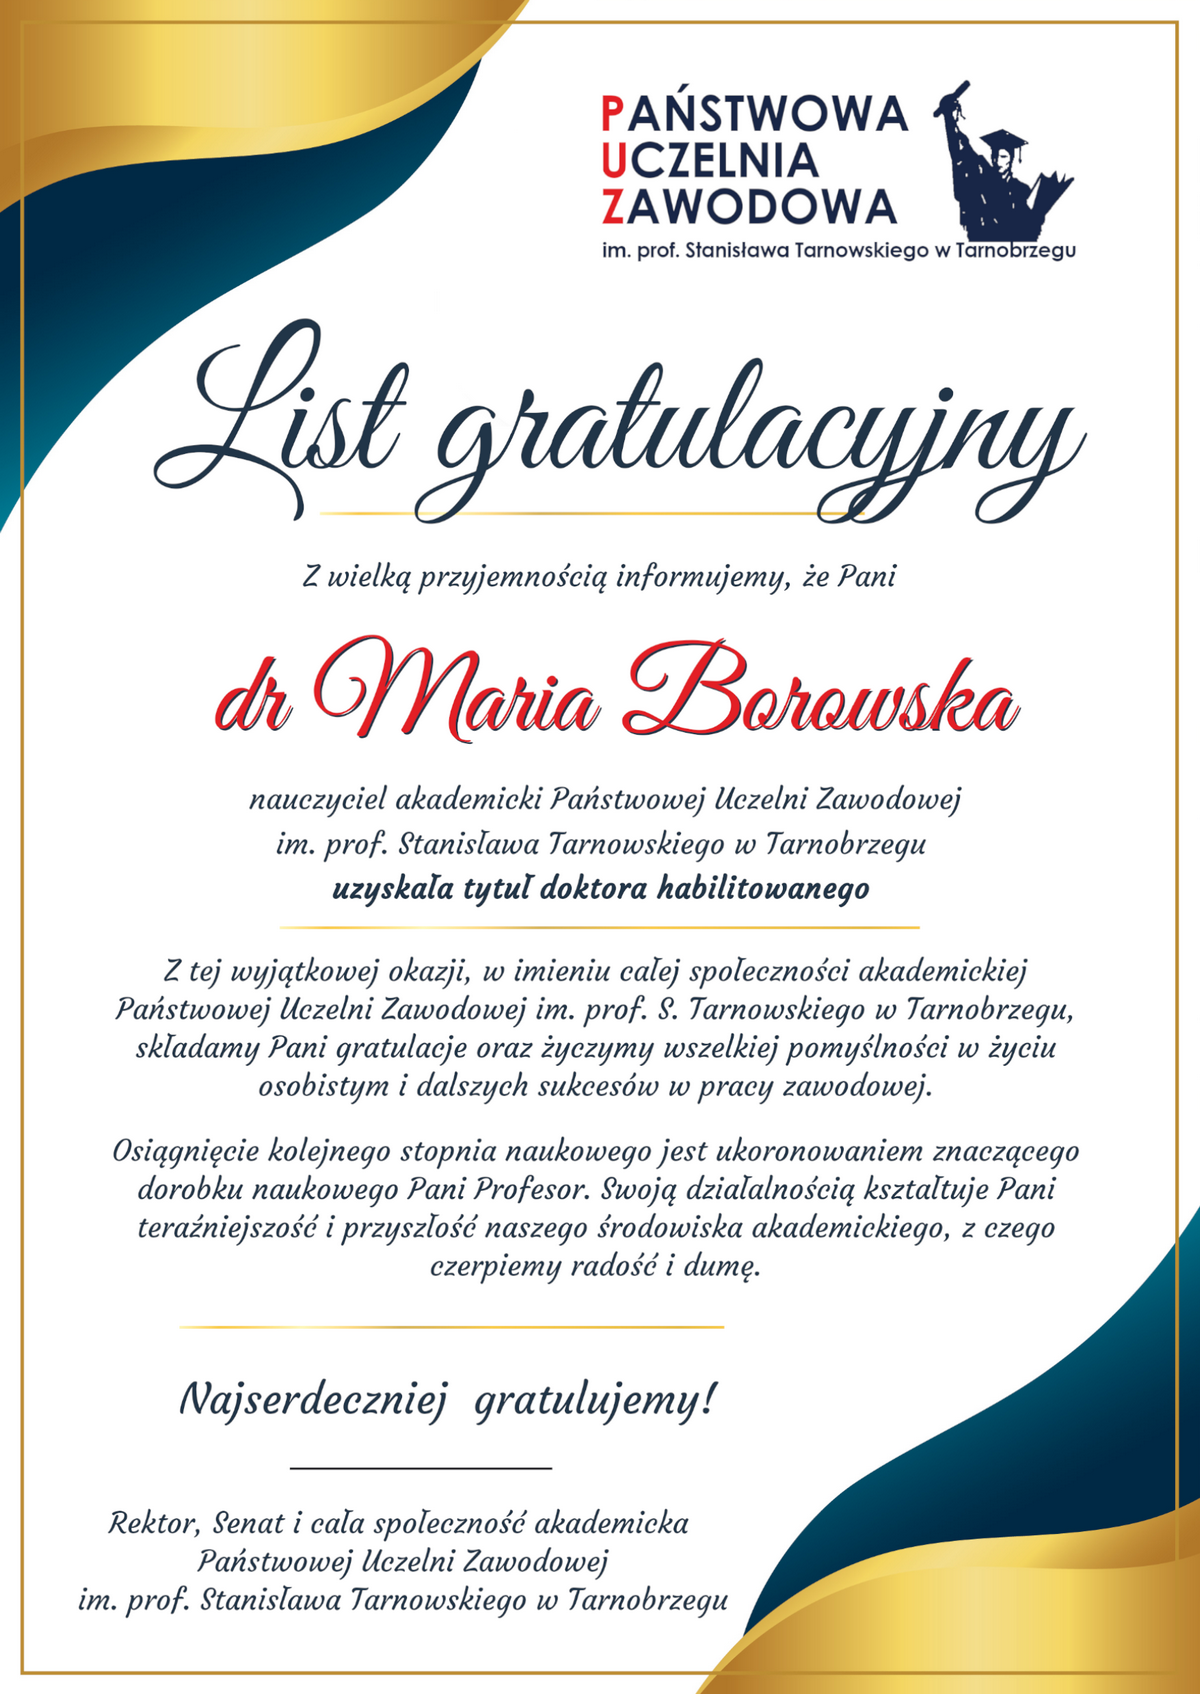 grafika przedstawia list gratulacyjny dla dr hab. Marii Borowskiej